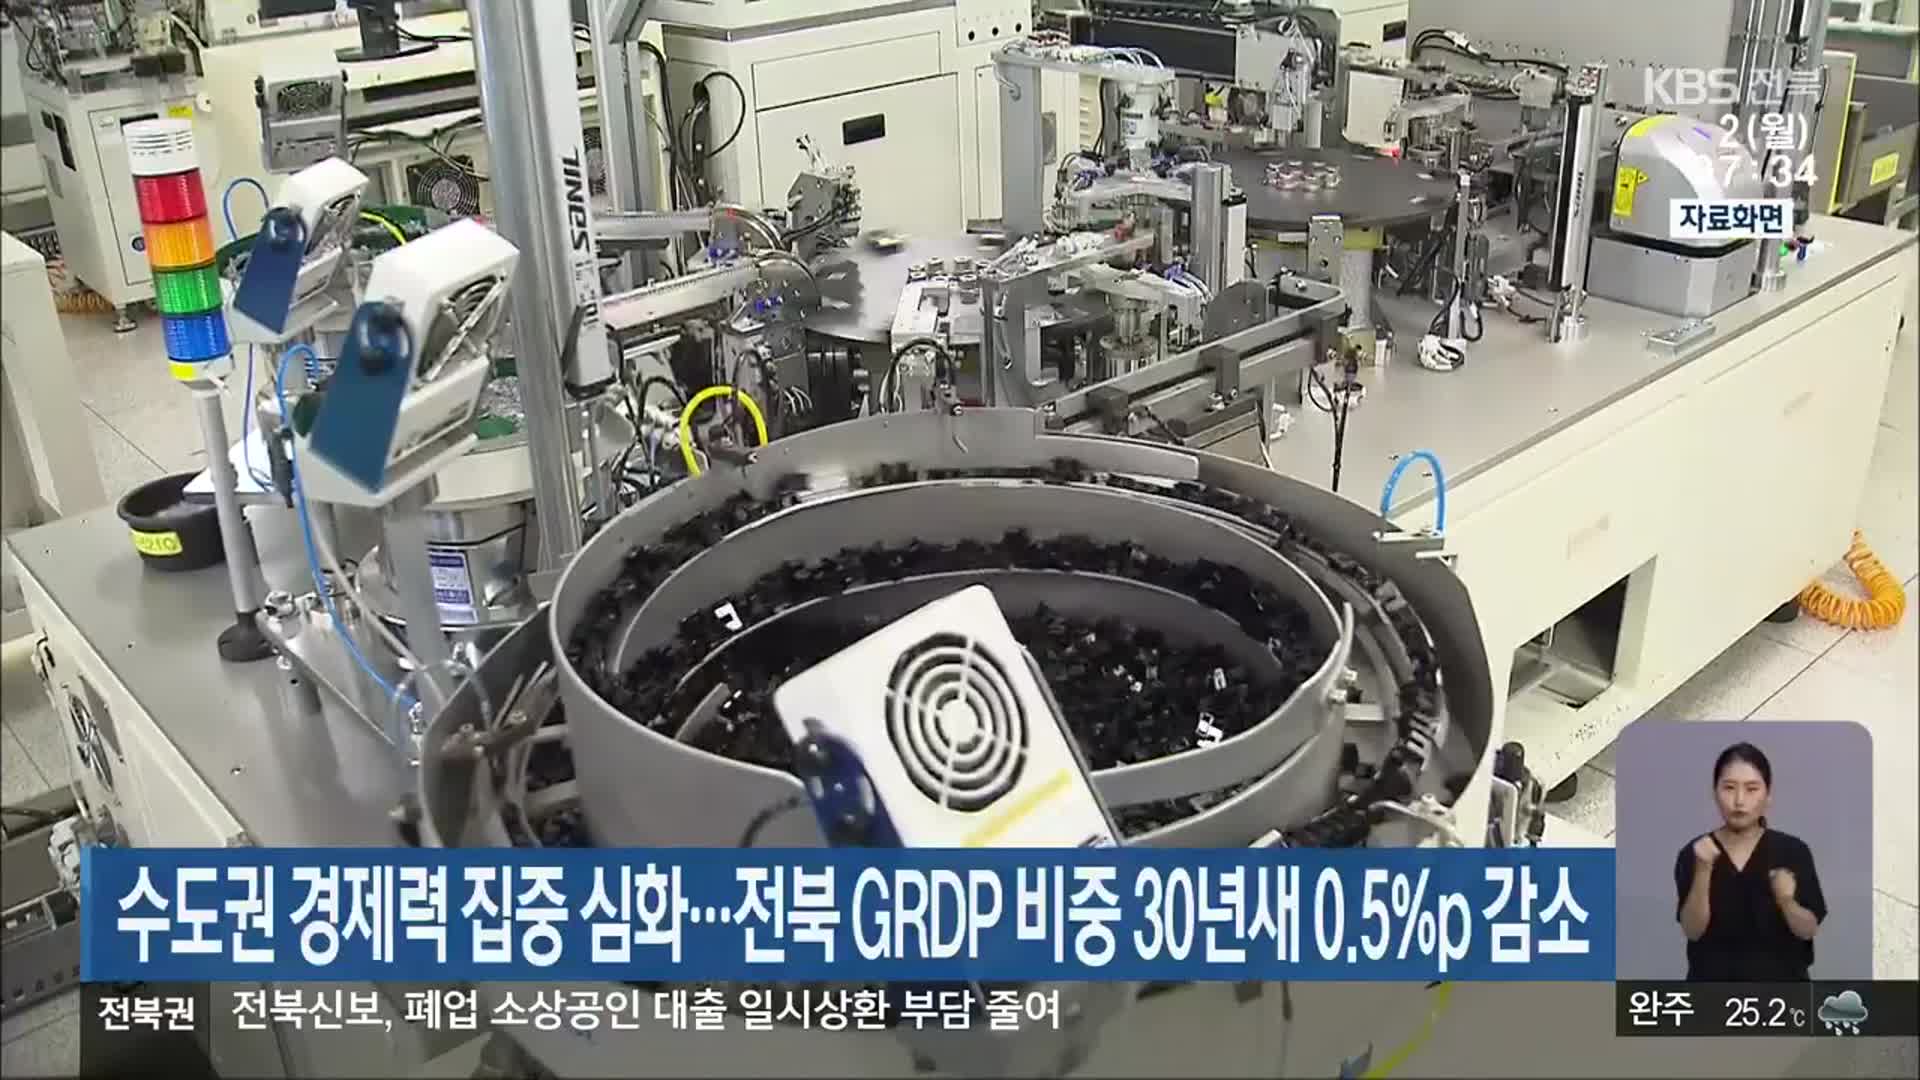 수도권 경제력 집중 심화…전북 GRDP 비중 30년새 0.5%p 감소